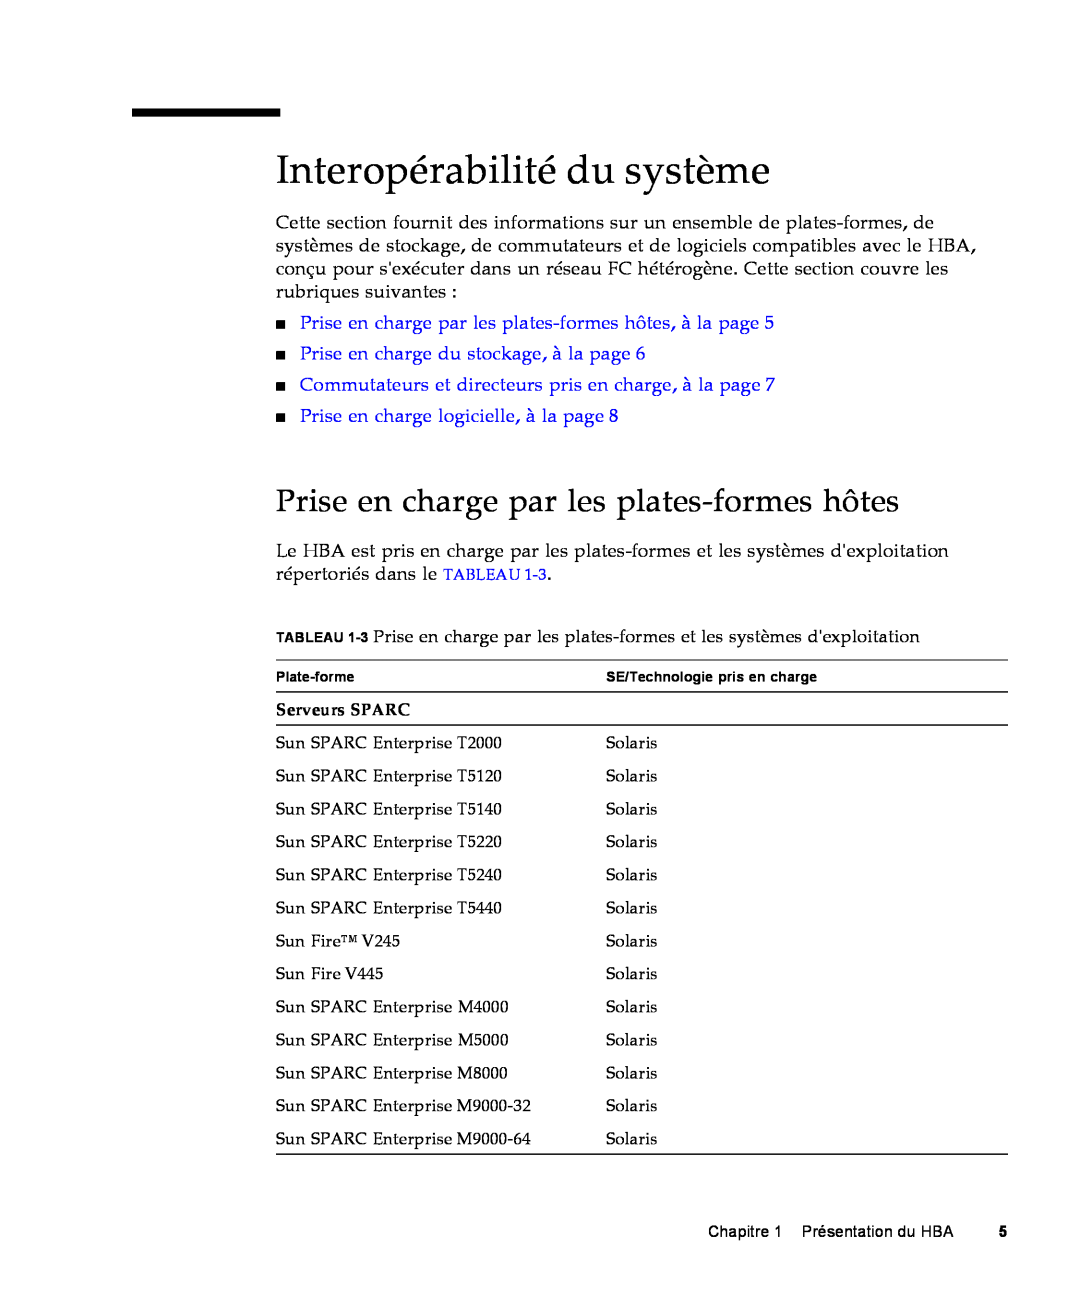 Sun Microsystems SG-XPCIE1FC-QF8-Z manual Interopérabilité du système, Prise en charge par les plates-formes hôtes 